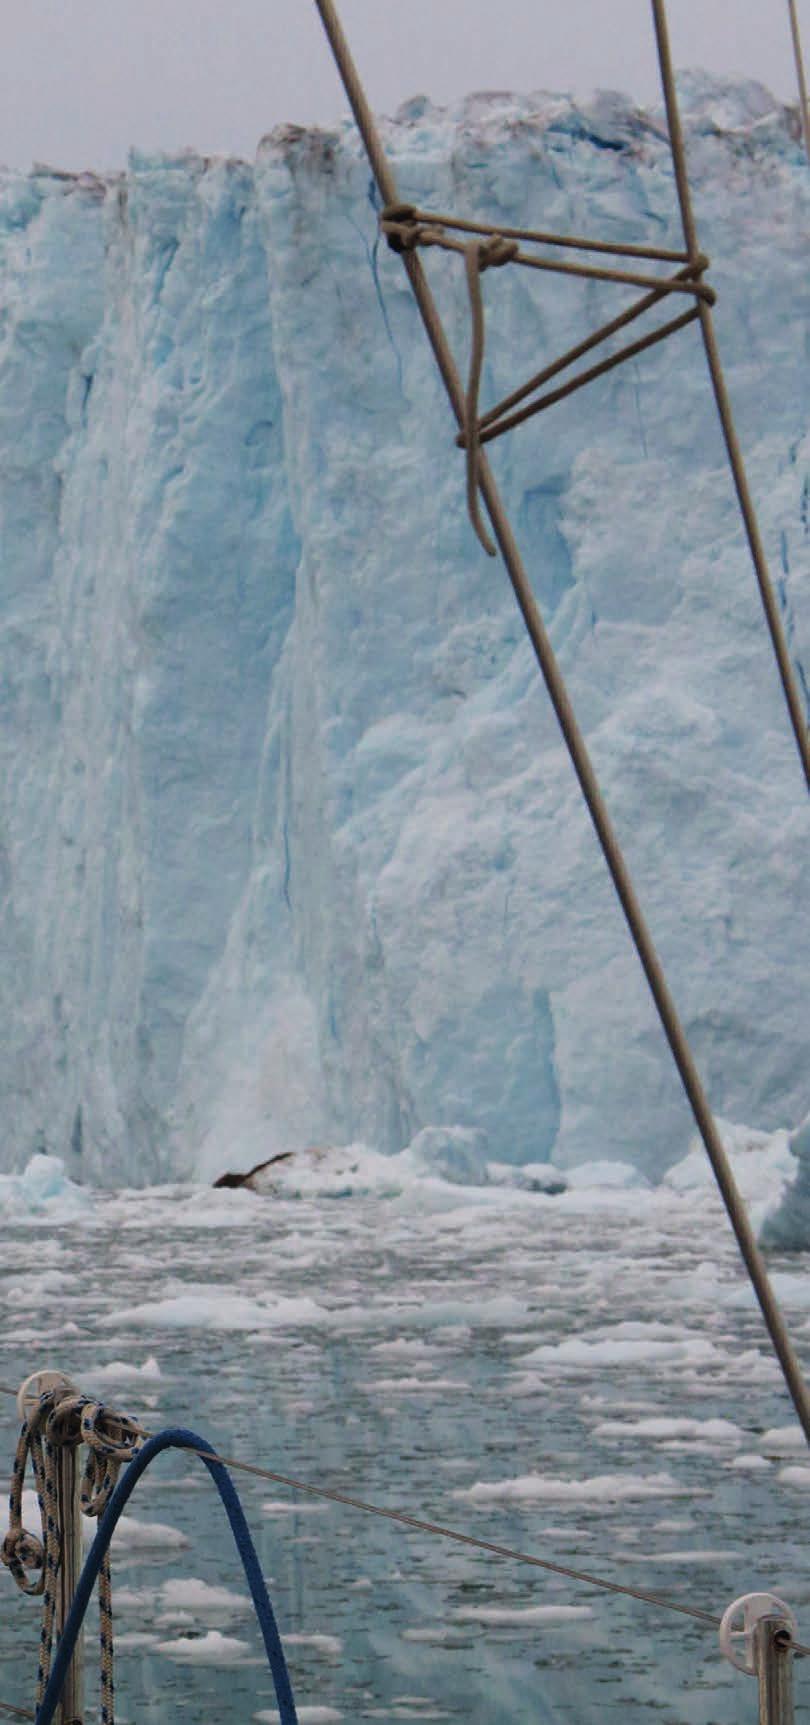 De boeg tegen het ijs en dan flink het gas erop DOORGANG Midden op zee drijft een enorme ijsberg.